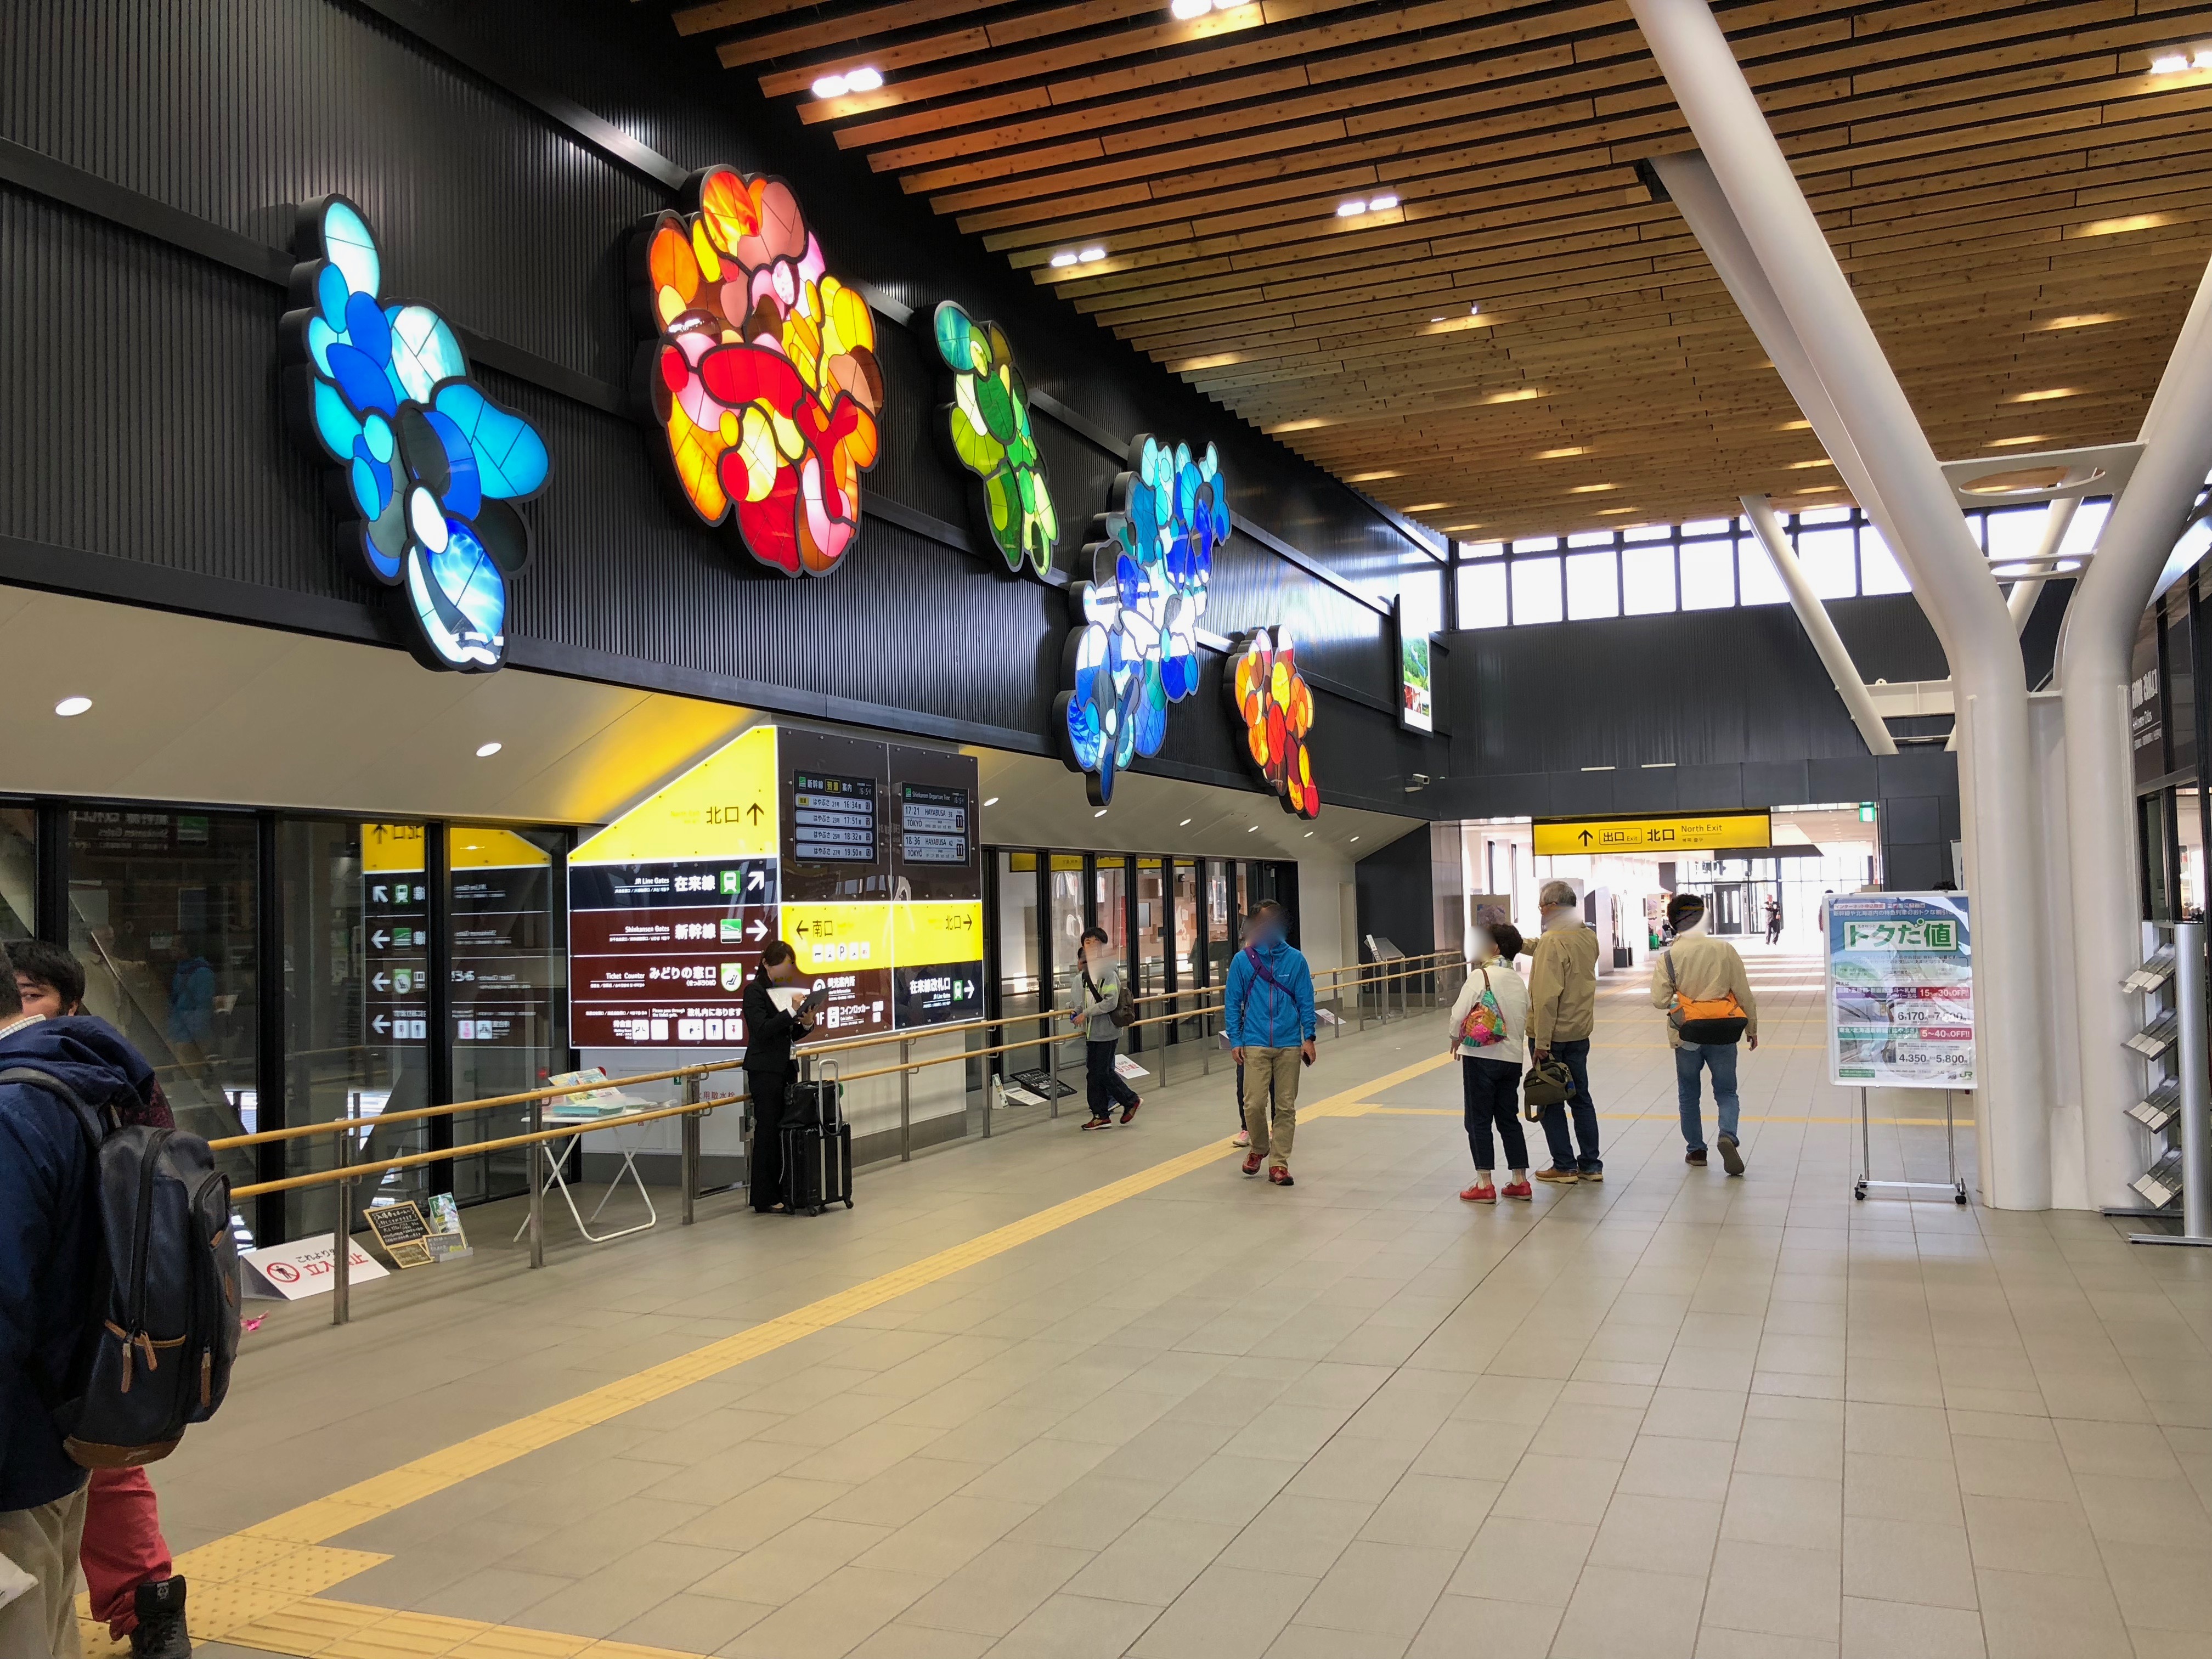 新函館北斗駅を見学 駅ビルに弁当や飲食店があり食事もしました 道産子コスケの北海道を楽しむブログ